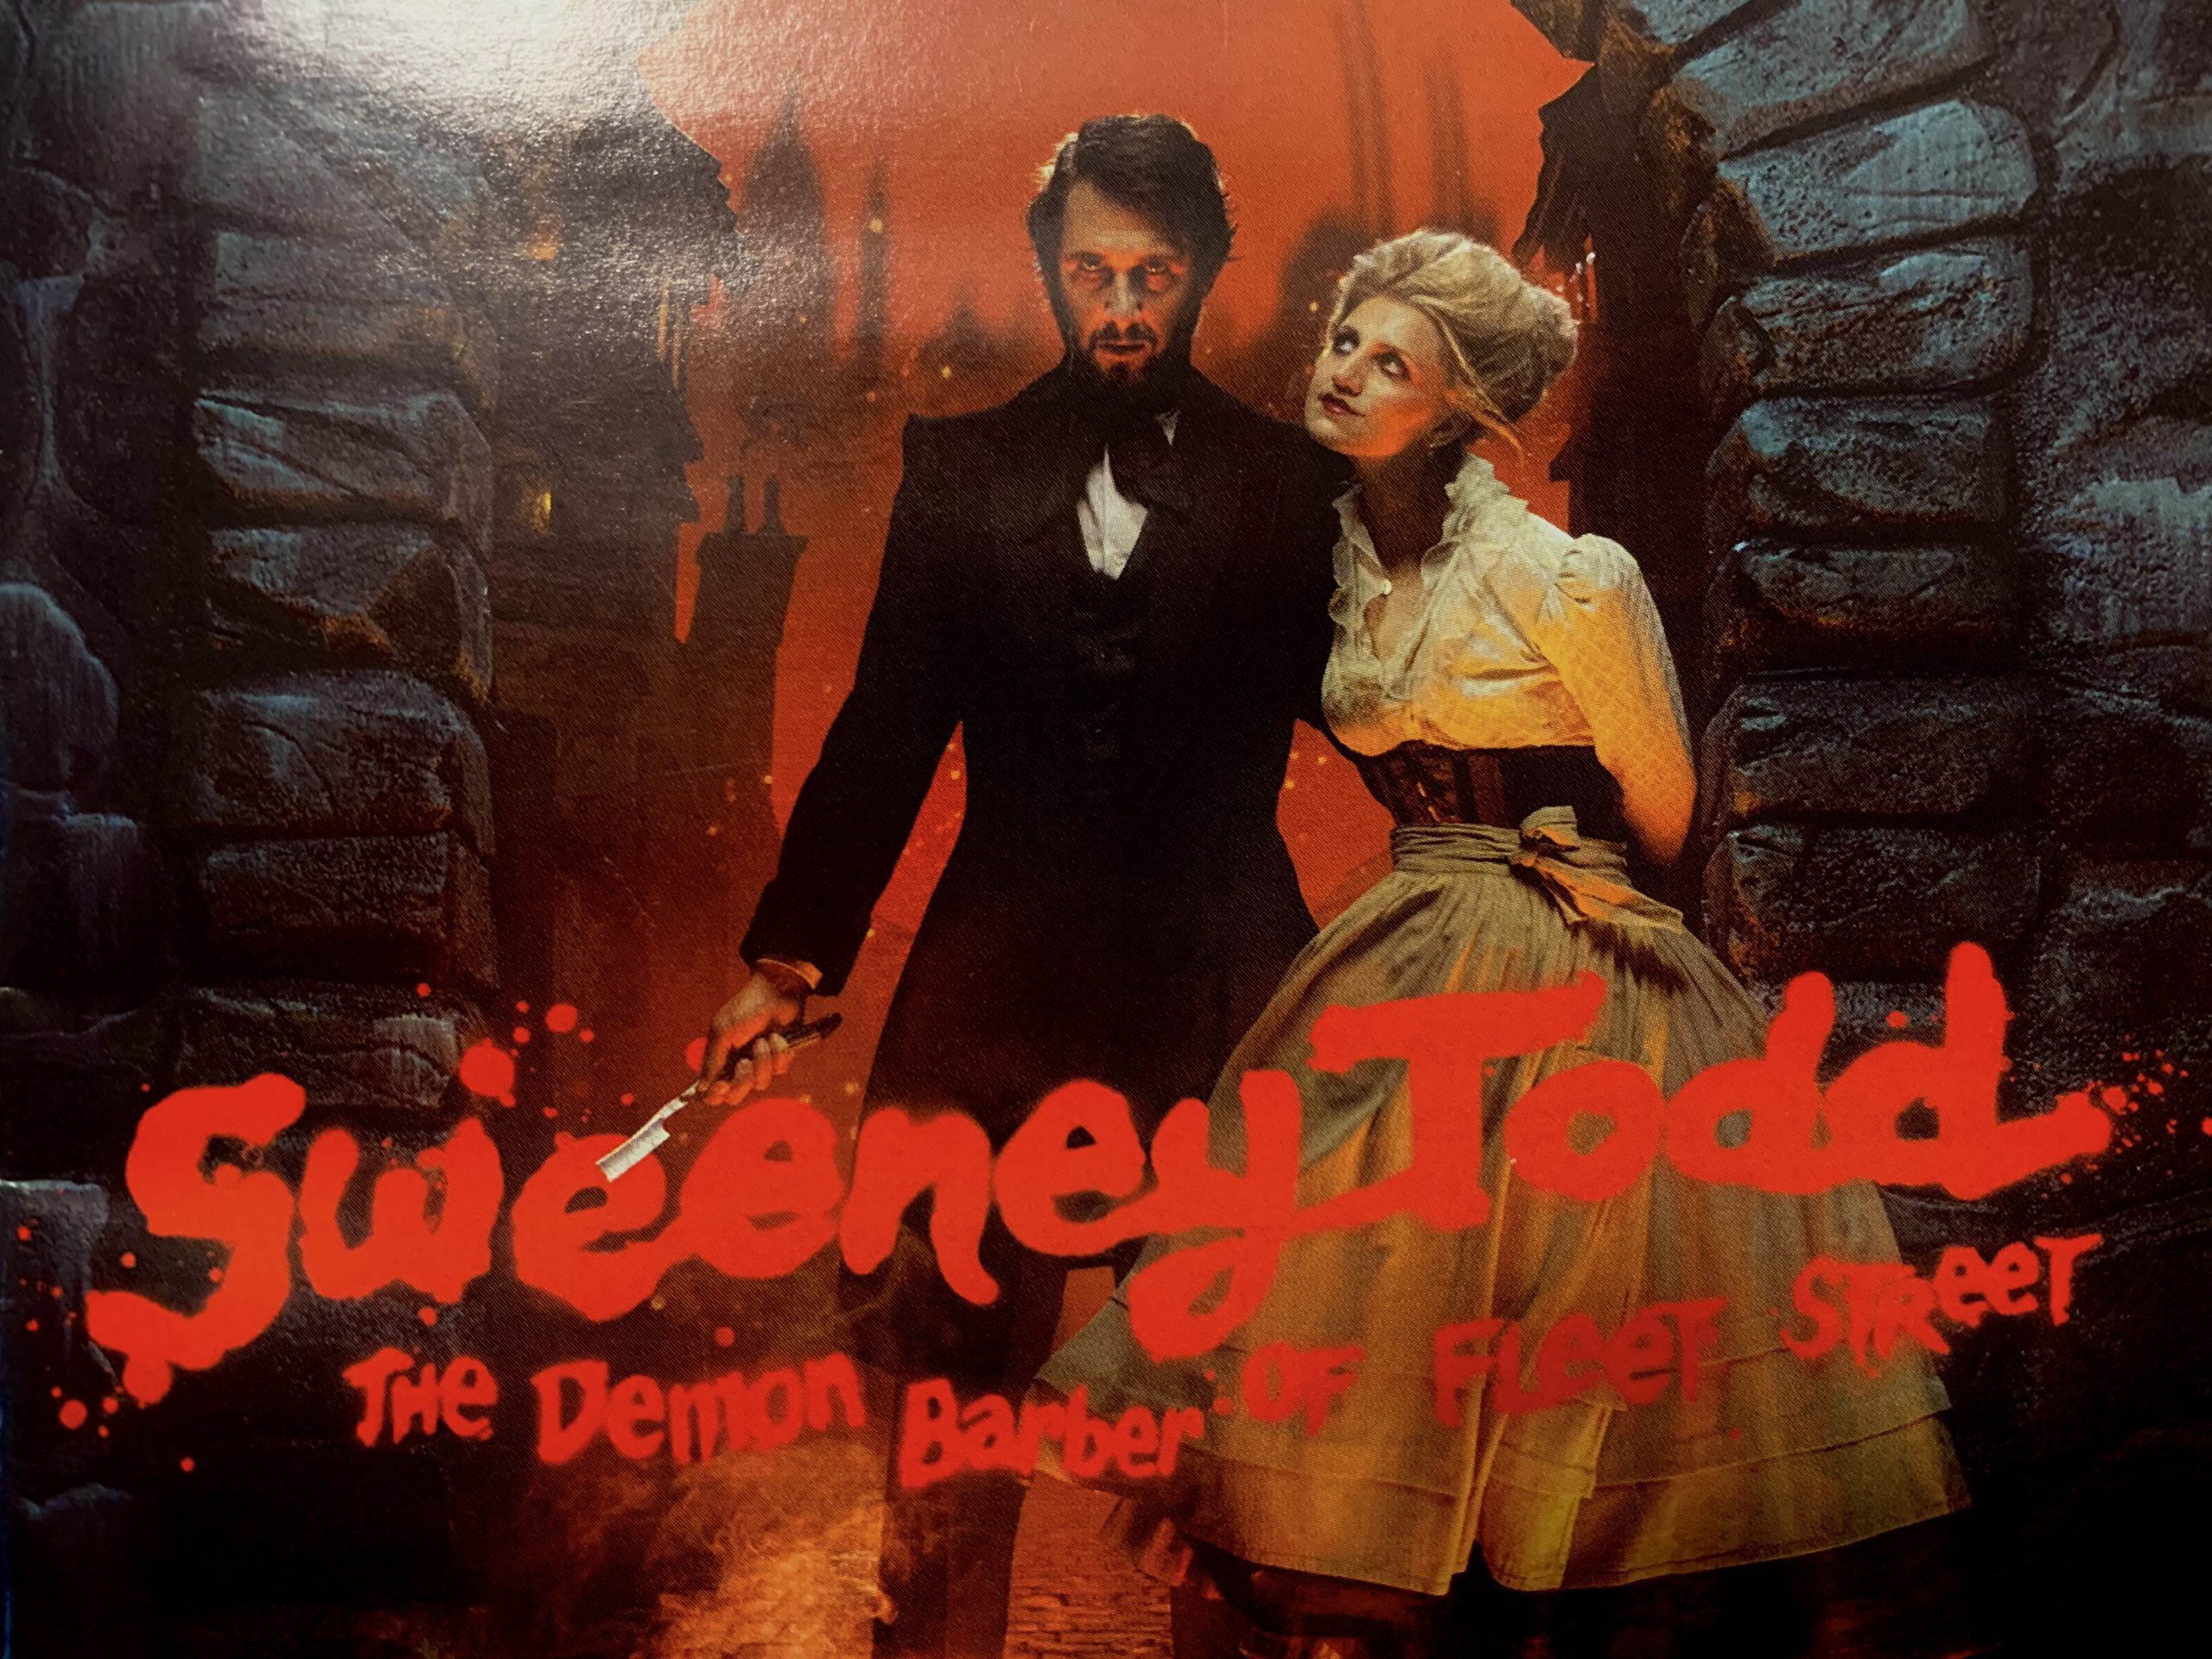 Vintage Vinyl & Playbill Sweeney Todd, Demon Barber of Fleet